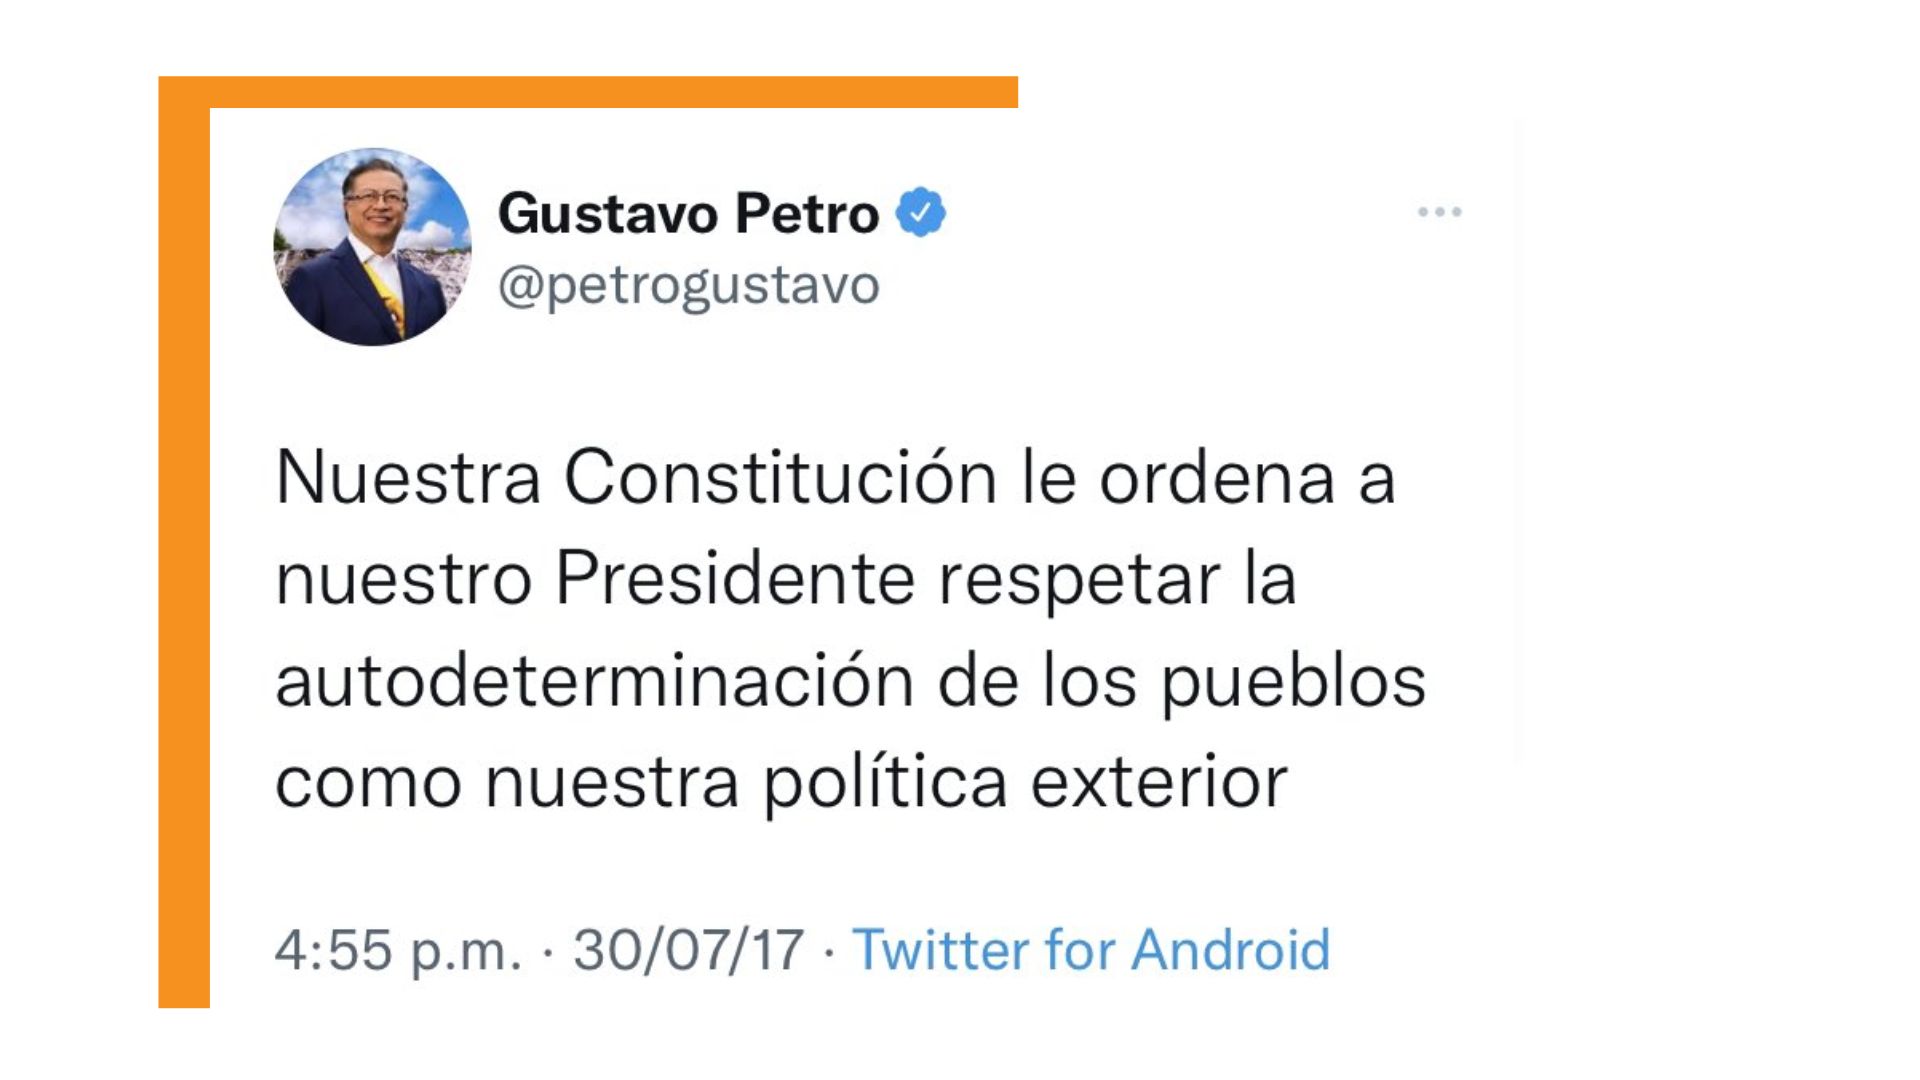 Este tuit lo realizó luego de que el Gobierno de Nicolás Maduro celebrara los resultados de la Constituyente el 31 de julio de 2017